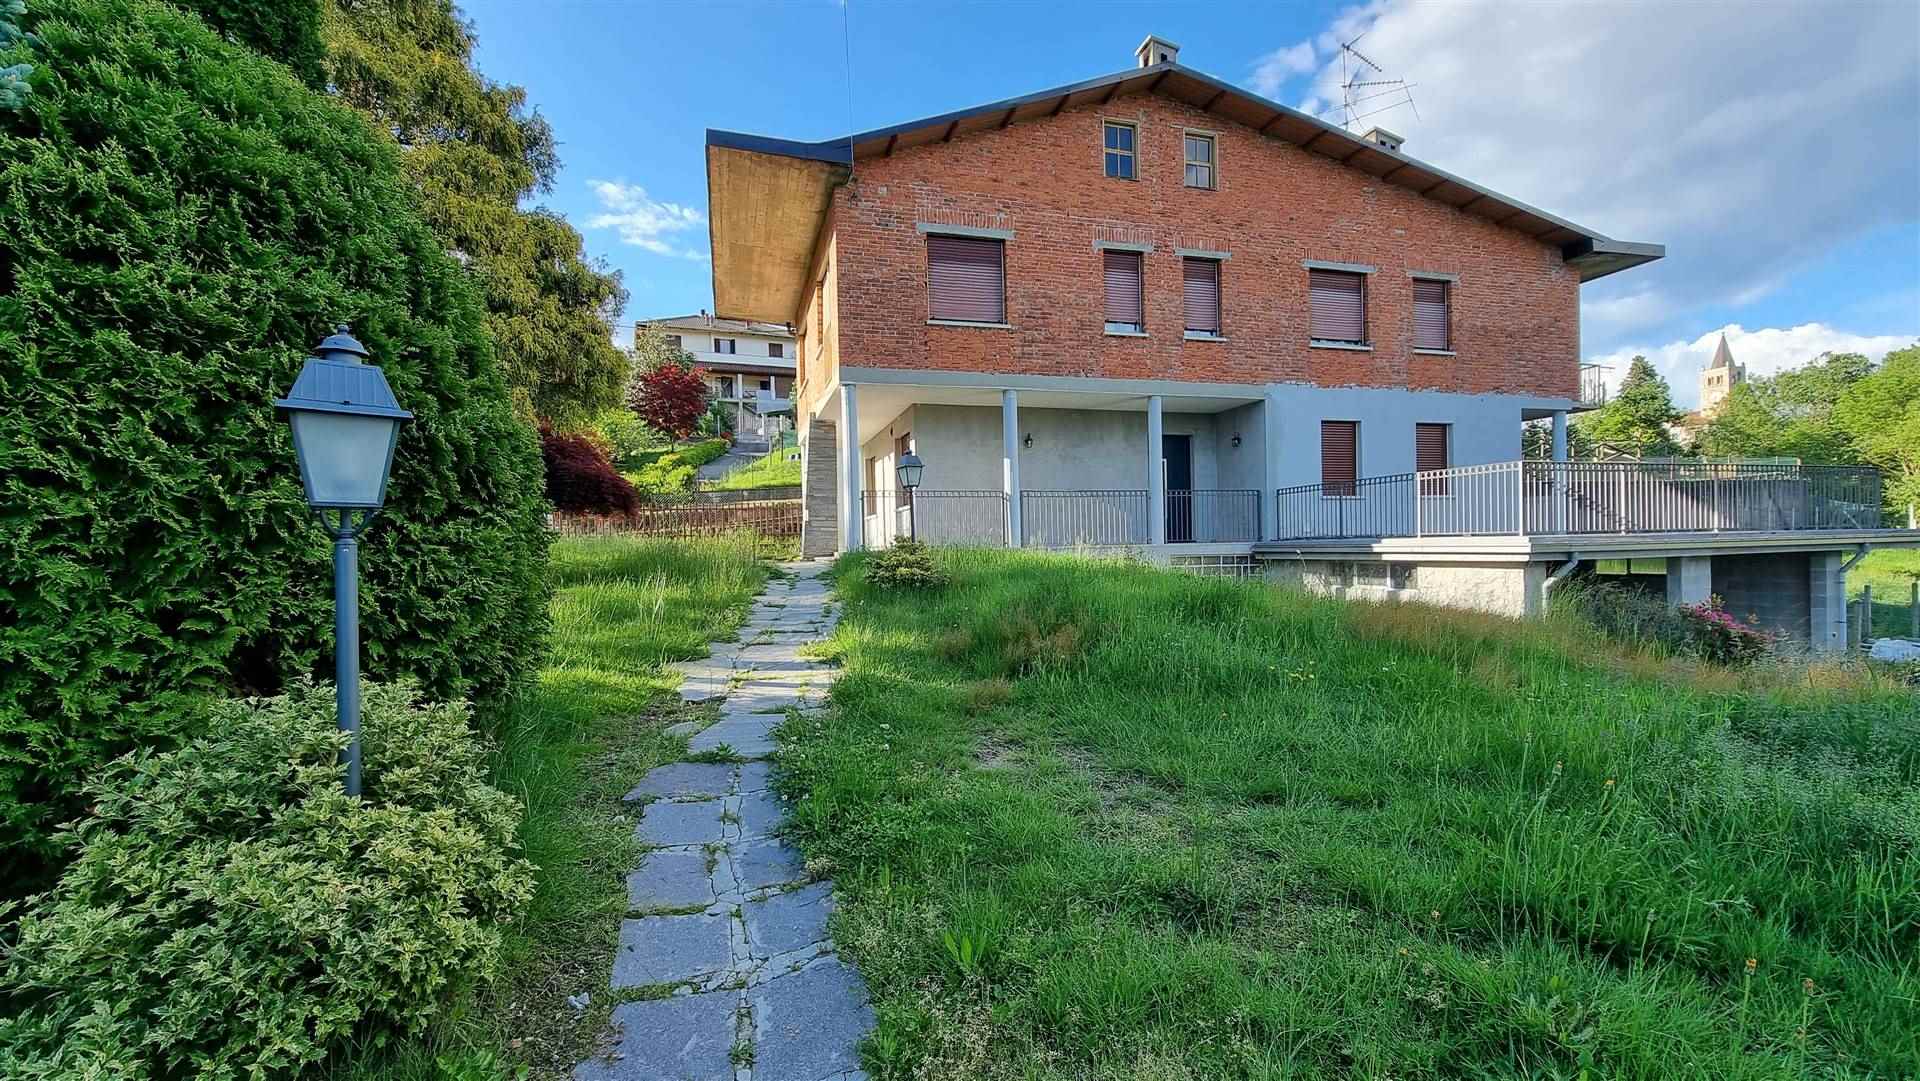 Villa Bifamiliare in vendita a Mezzana Mortigliengo, 8 locali, prezzo € 119.000 | PortaleAgenzieImmobiliari.it